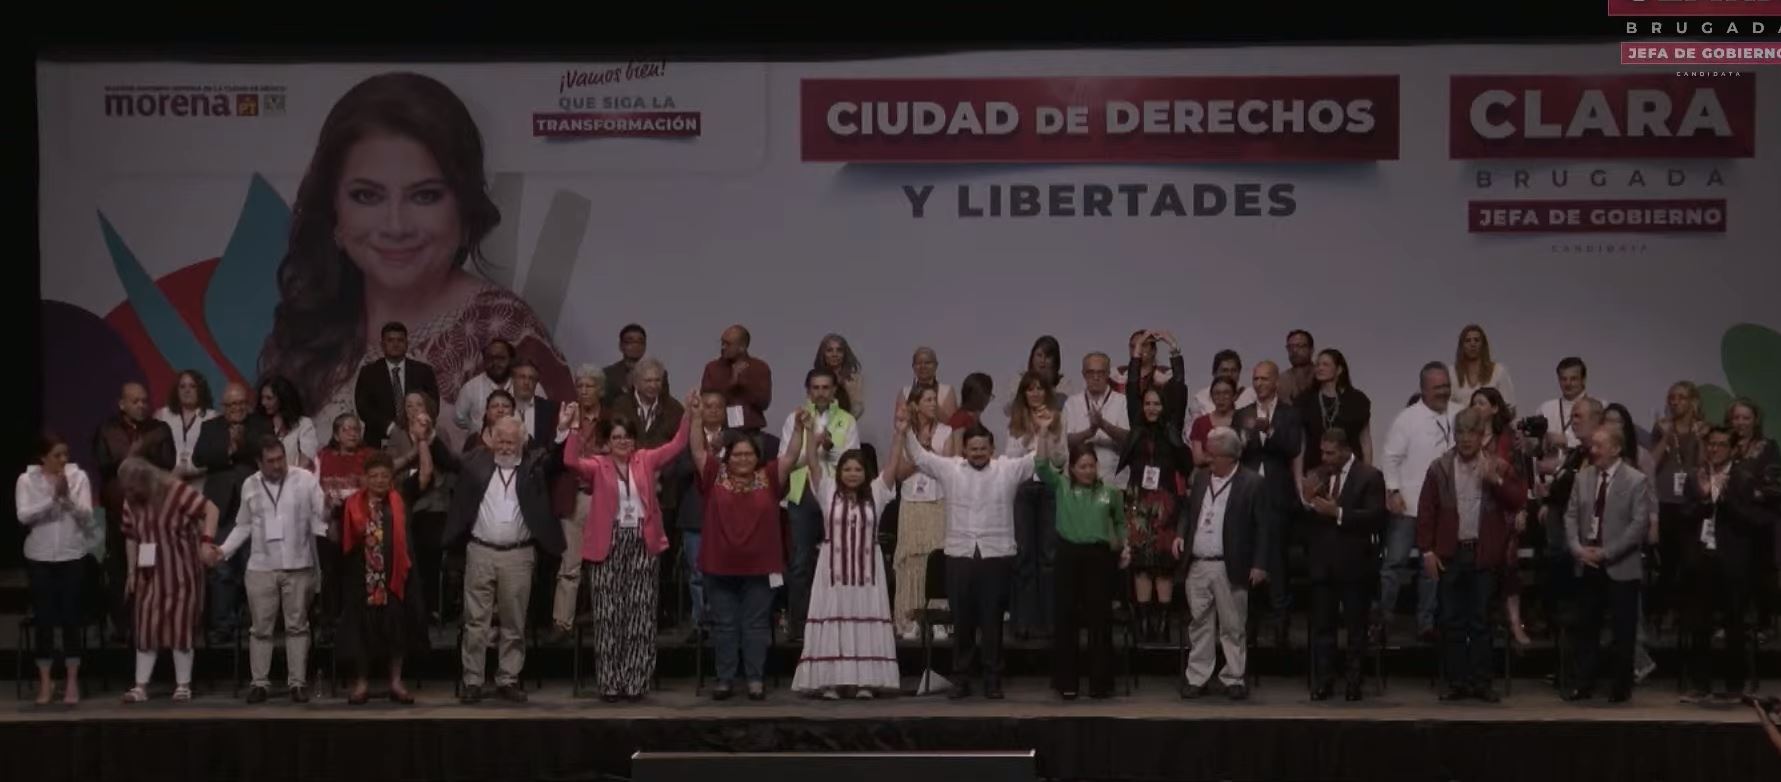 Presenta Clara Brugada sus propuestas de gobierno: plantea la Construcción de 100 “Utopías” en la Ciudad